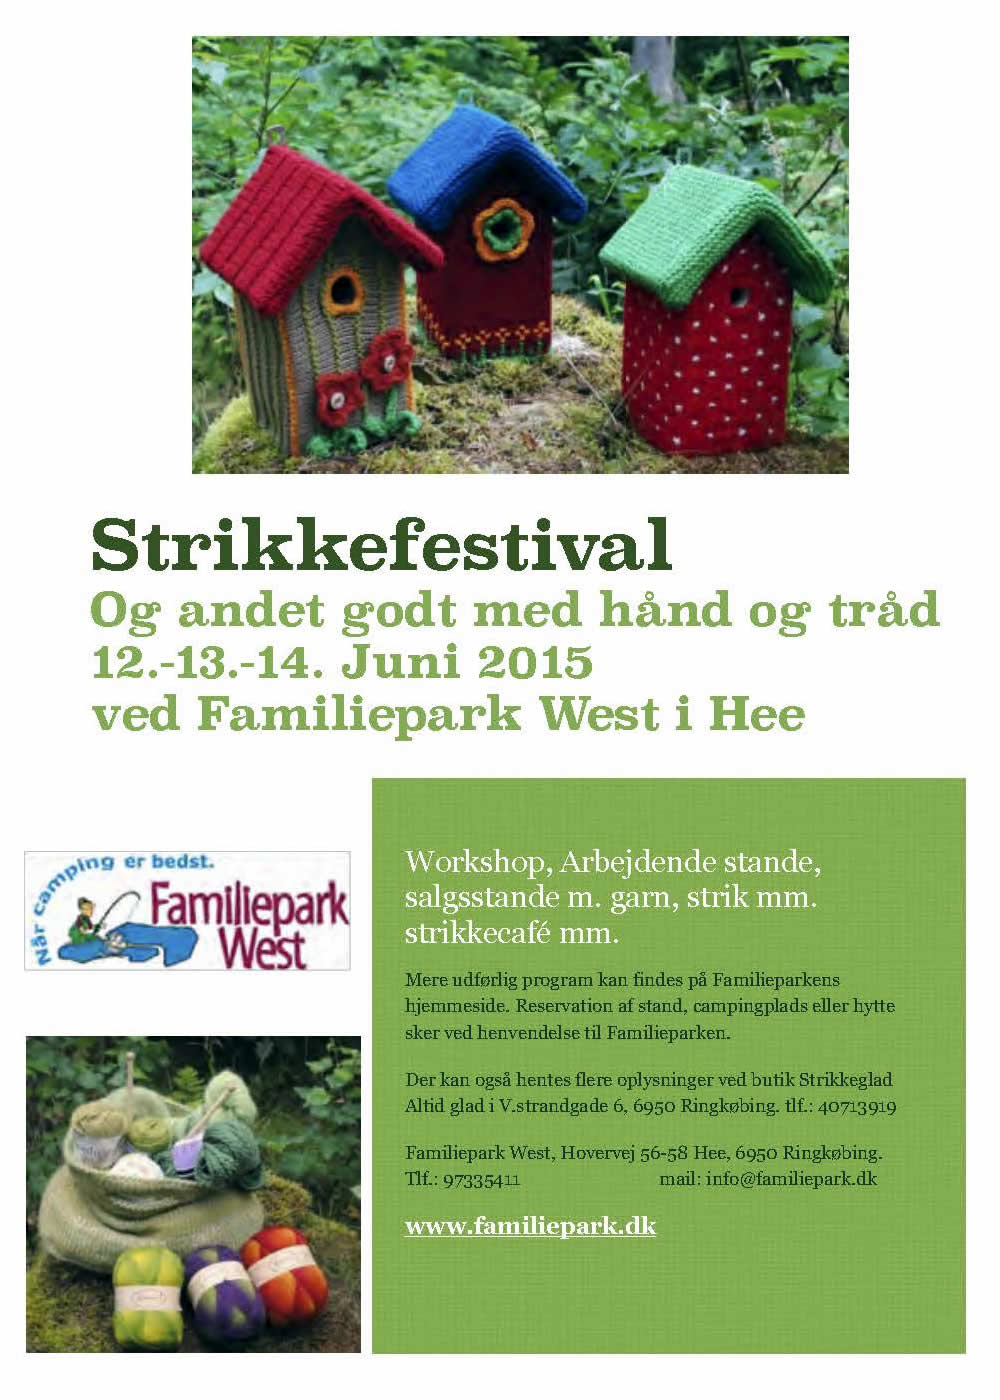 Strikkefestival i Hee 12. - 14. juni